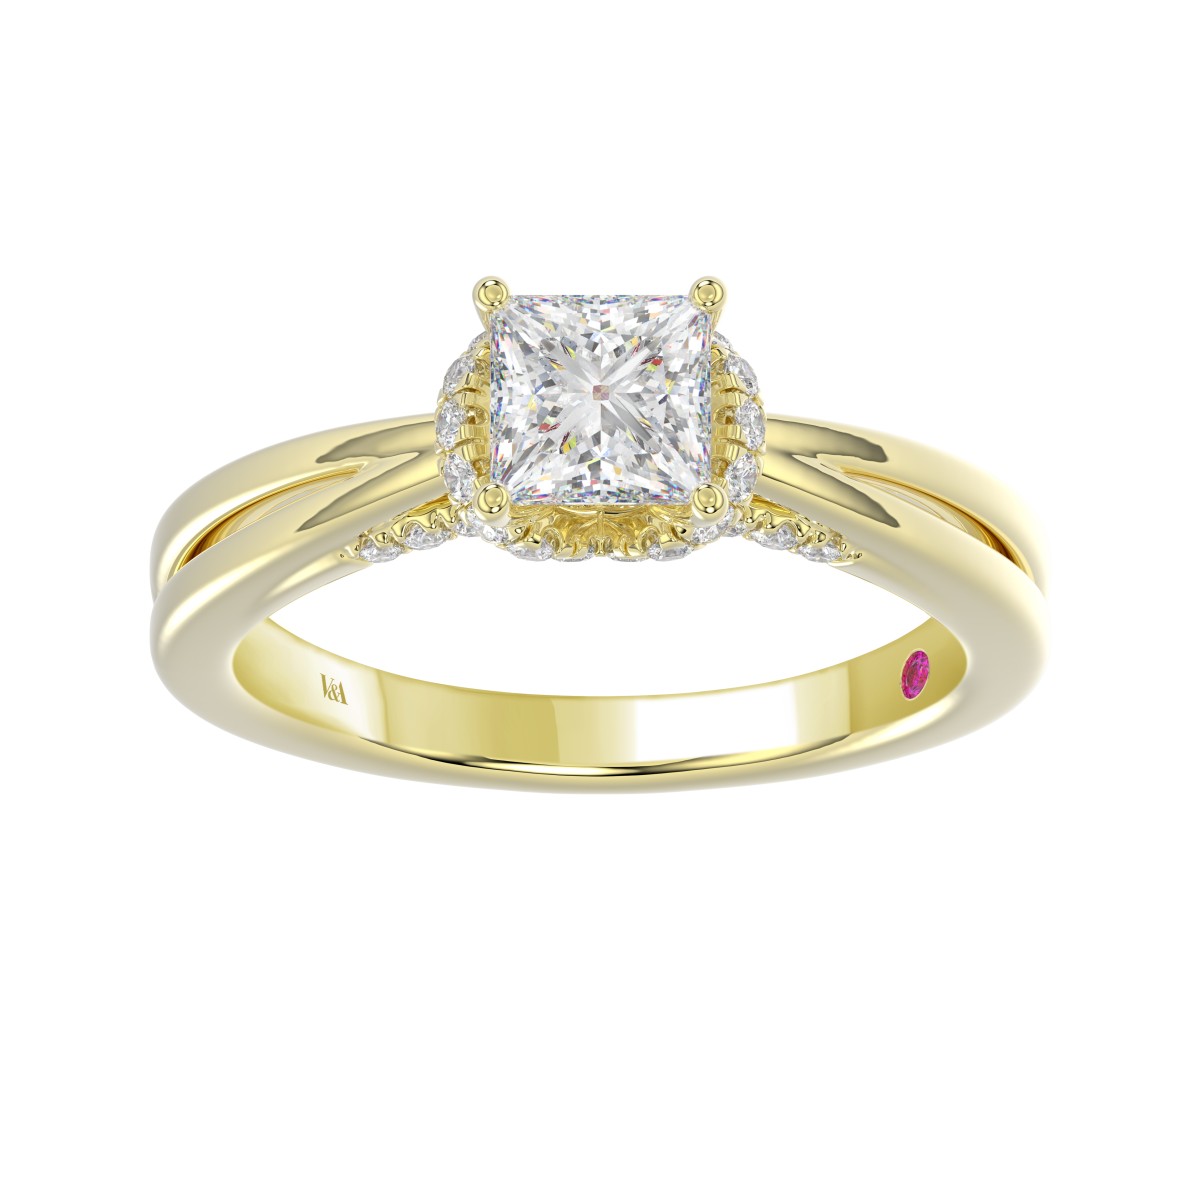 18K YELLOW GOLD 7/8CT ROUND/PRINCESS DIAMOND LADIES RING( CENTER STONE PRINCESS DIAMOND 5/8 CT)